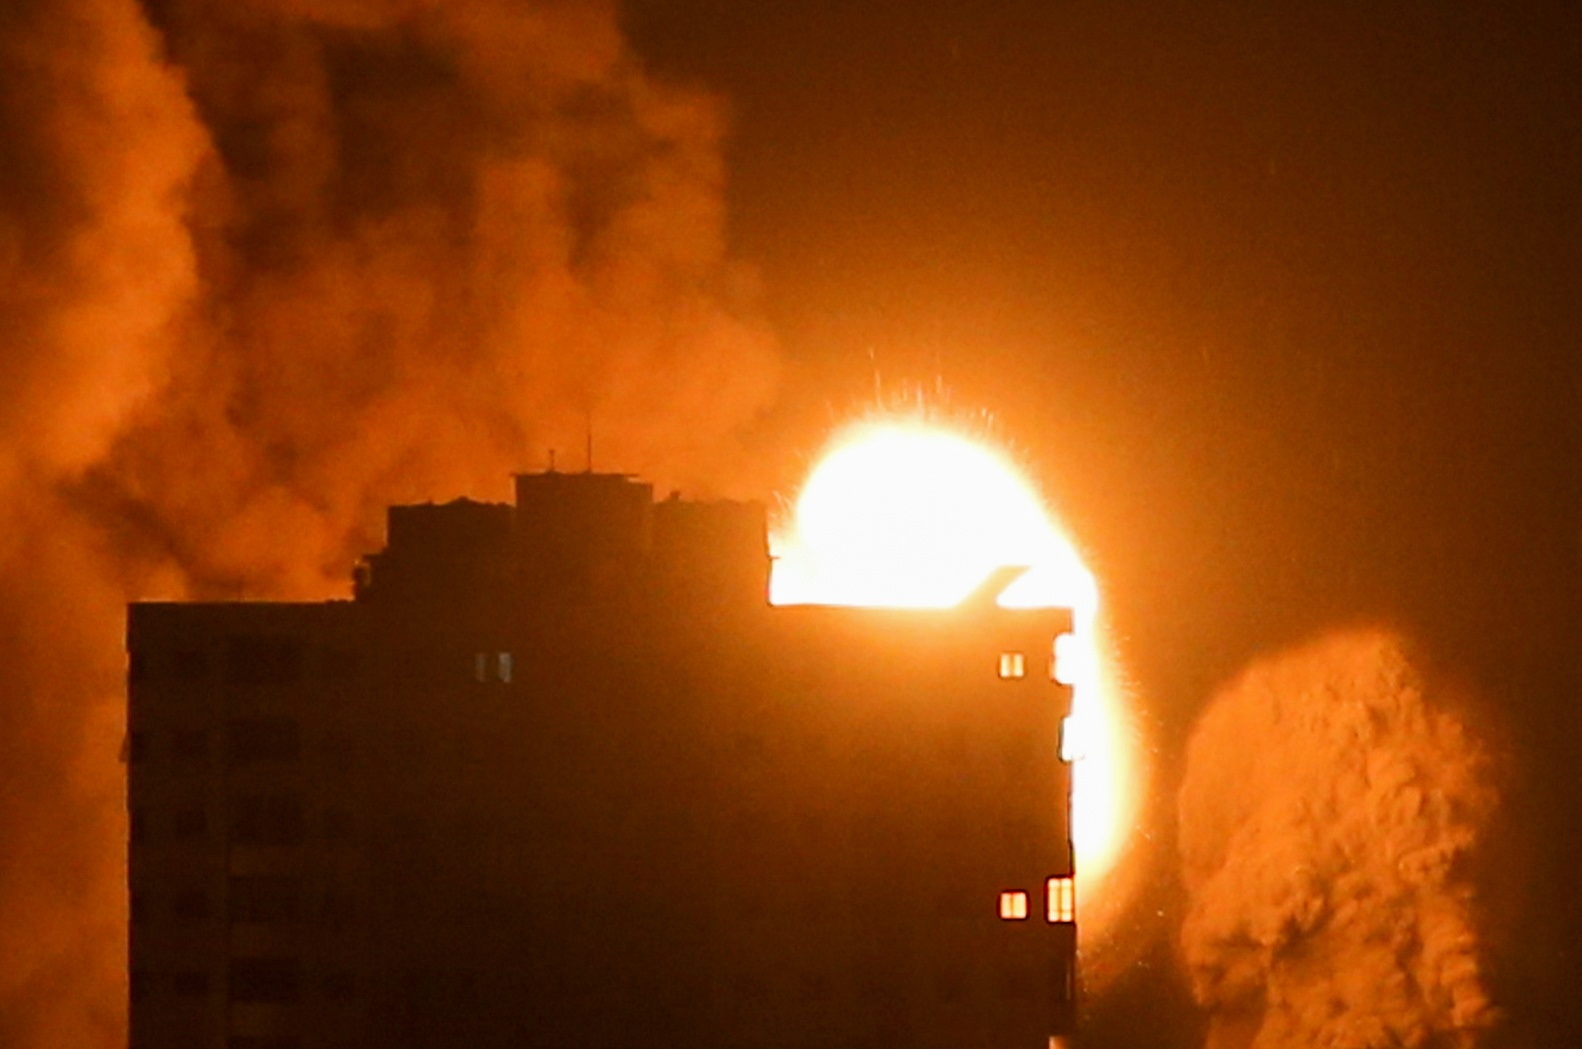 تصاعد النيران والدخان فوق المباني في مدينة غزة، جراء استهداف طائرات الاحتلال الإسرائيلي القطاع الفلسطيني، 17 مايو 2021. (رويترز / إبراهيم أبو مصطفى)